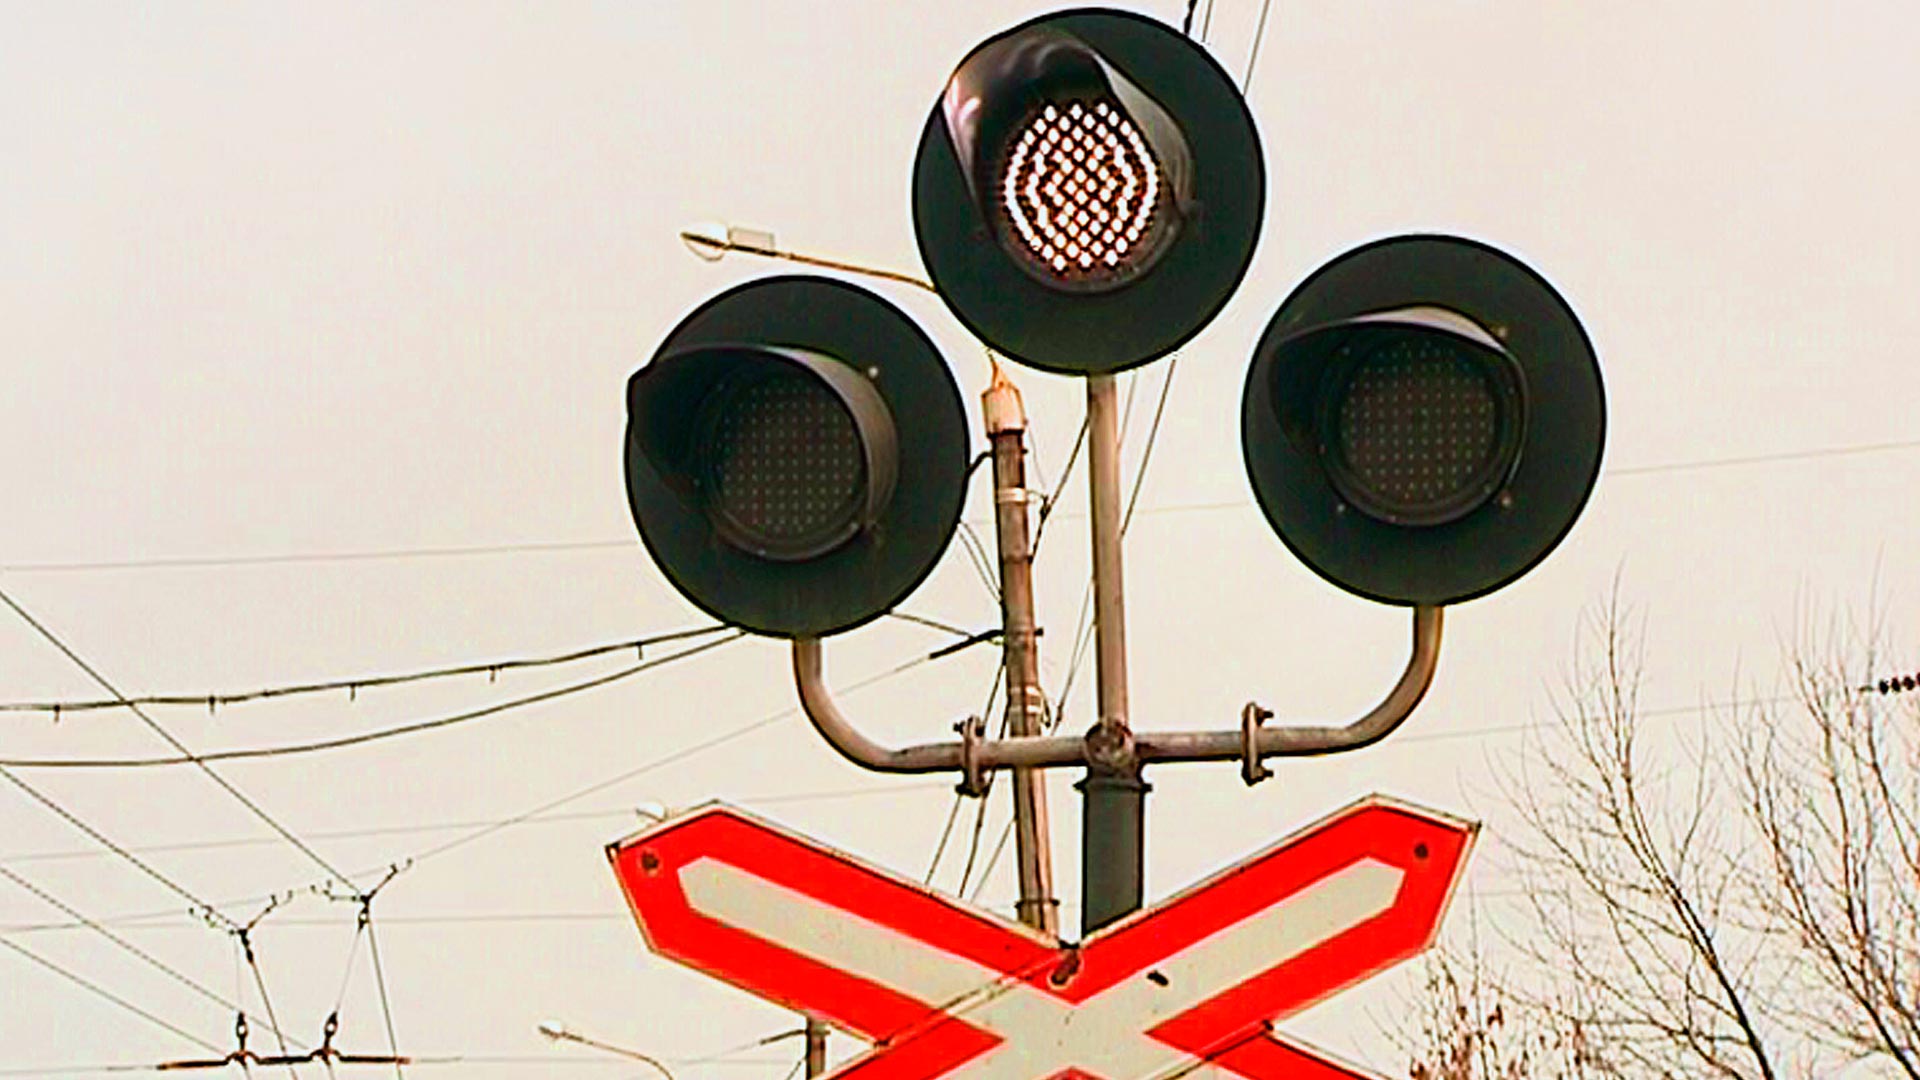 Белый сигнал жд. ЖД переезд светофор семафор. ЖД переездной светофор. Железнодорожный светофор сигналы. Светофор для железной дороги.